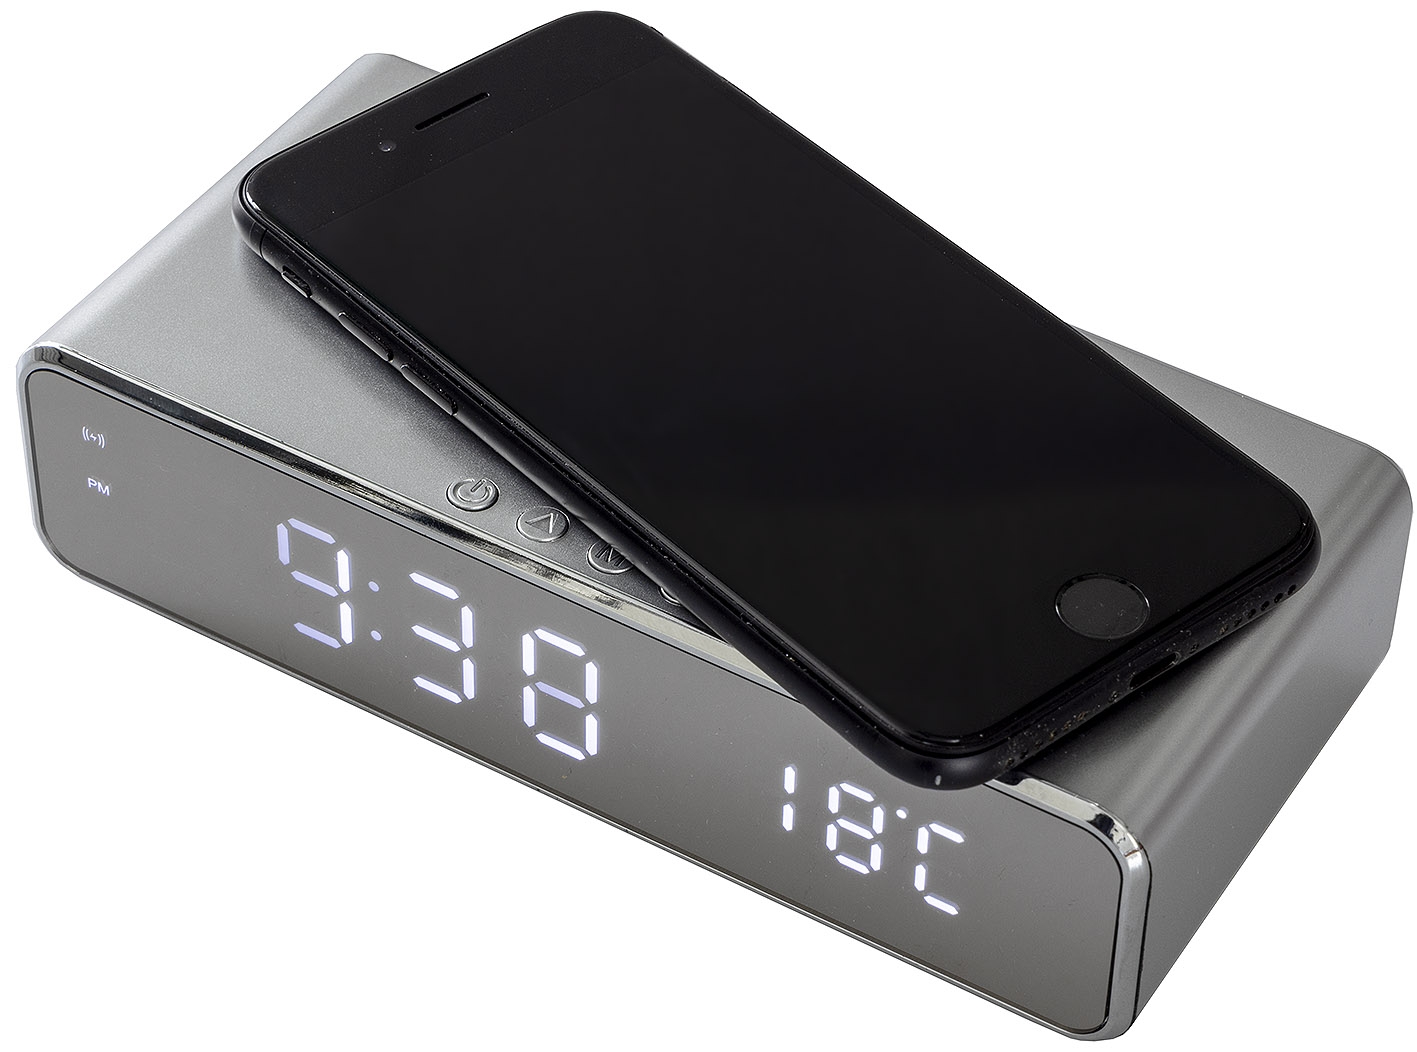 Uhrenwecker mit Thermometer, Anzeige und Smartphone-Induktionsladung - Bild 1